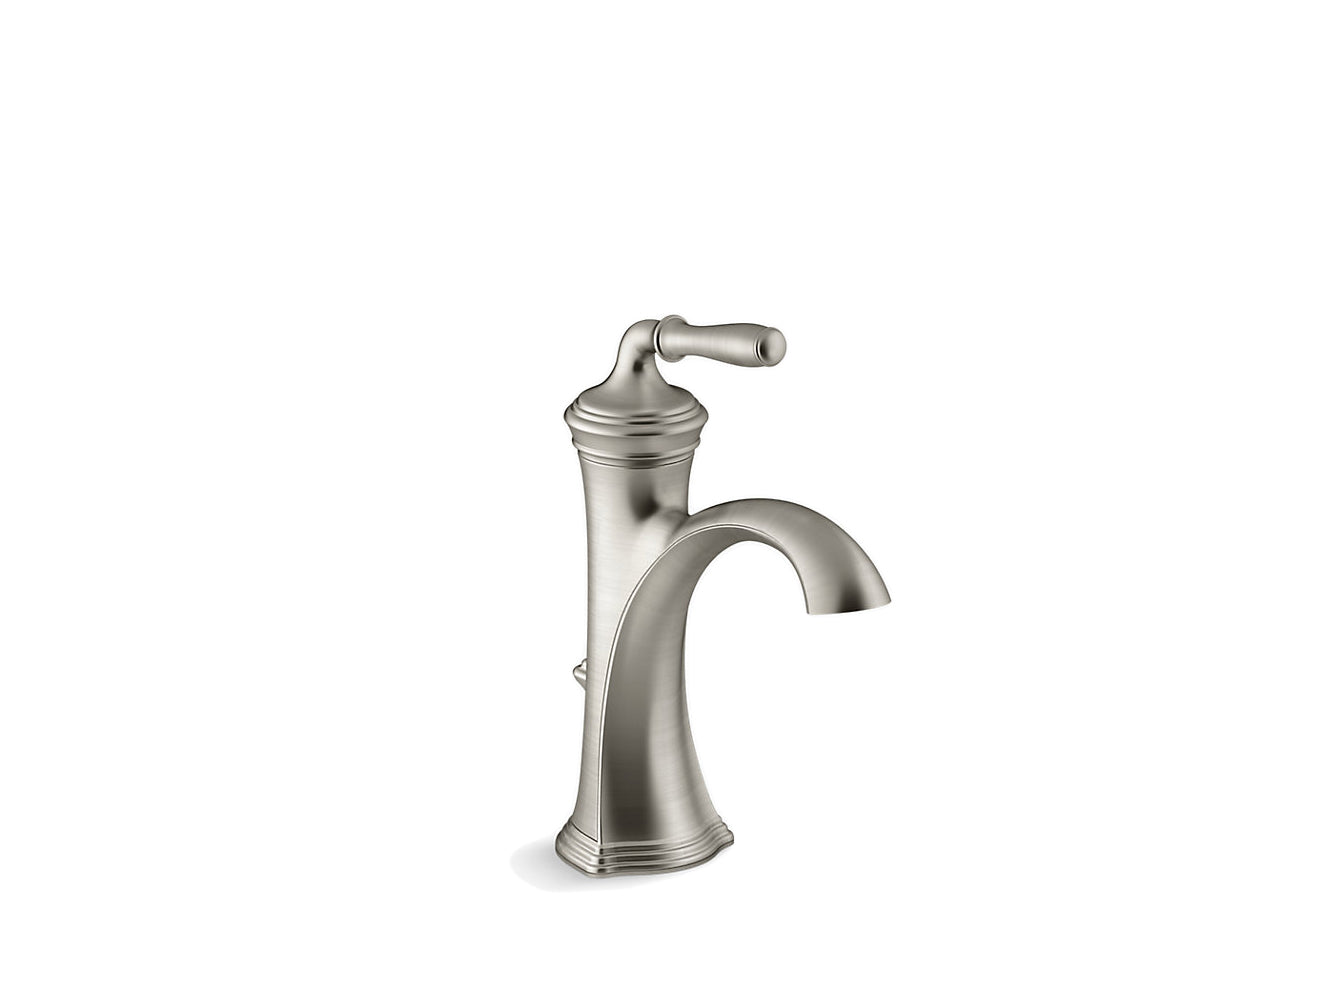 Kohler Devonshire Single Handle Bathroom Sink Faucet - Vibrant Brushed Nickel